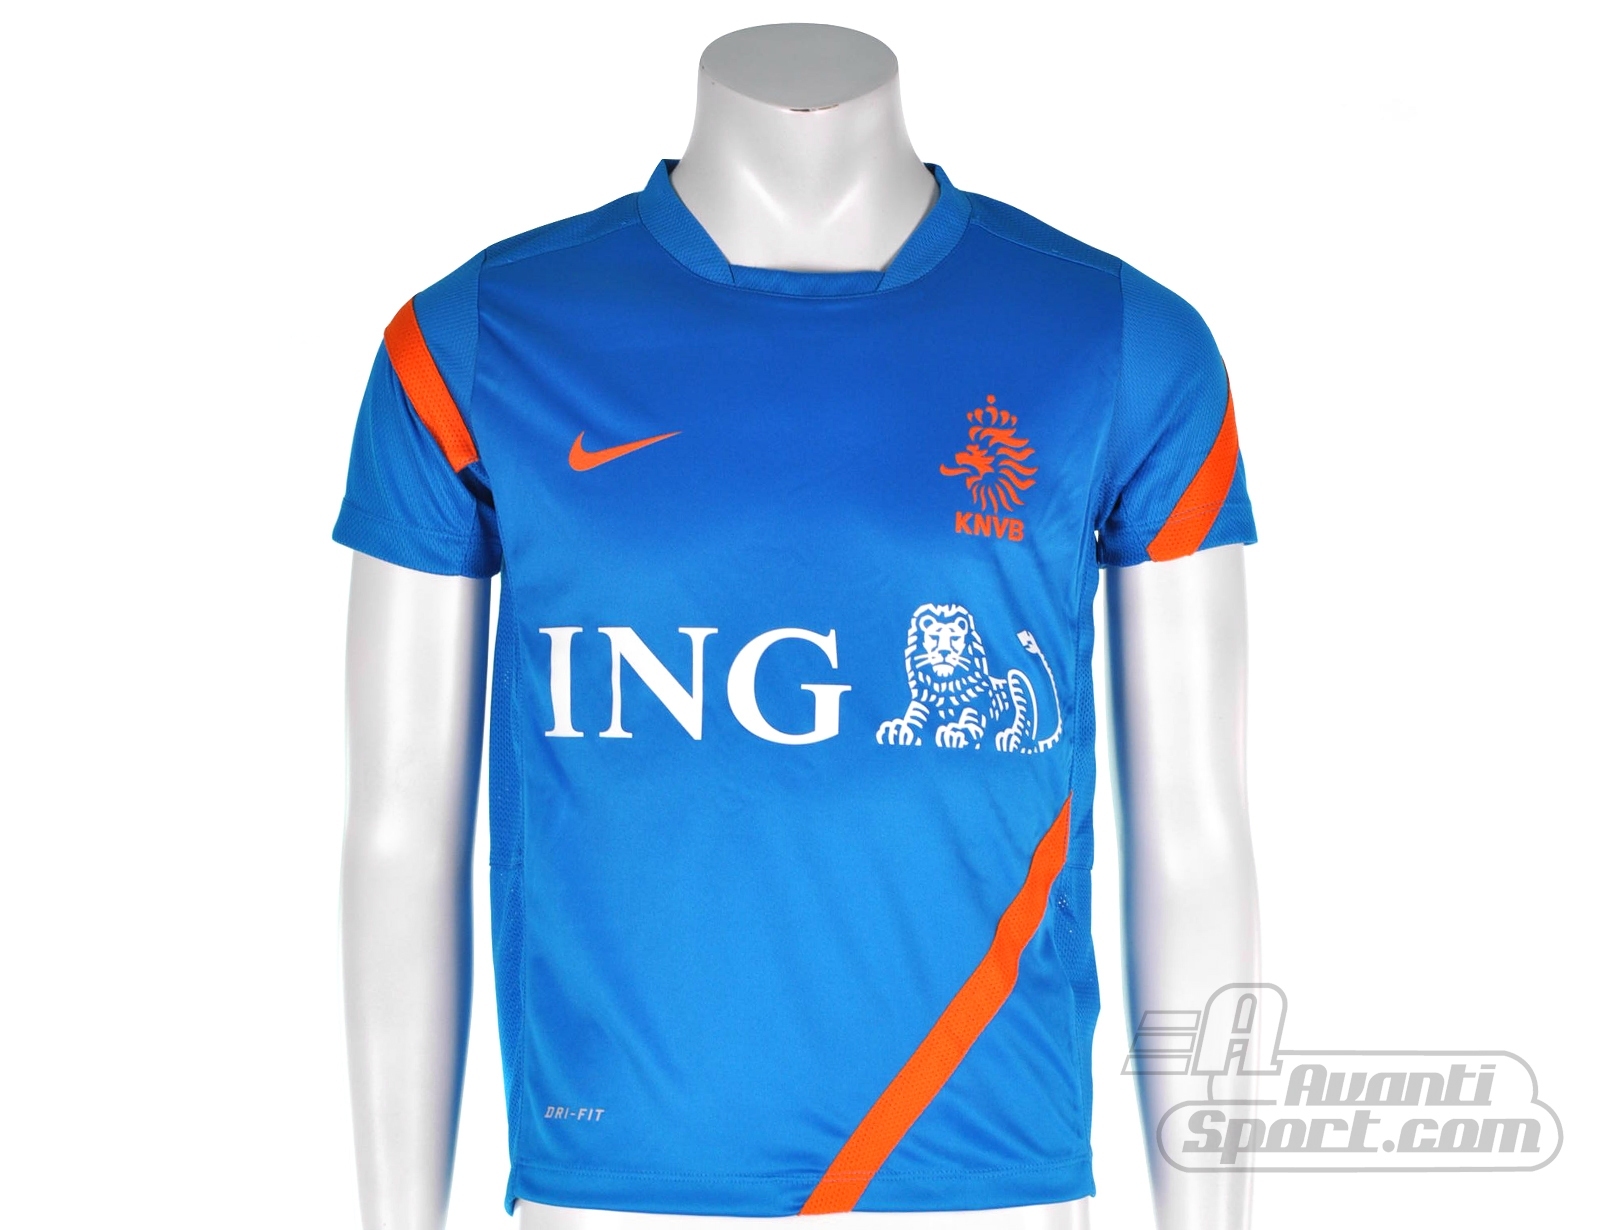 Avantisport - Nike - Dutch Boys Short Sleeve Training Top - Nike Jongens Voetbalshirt